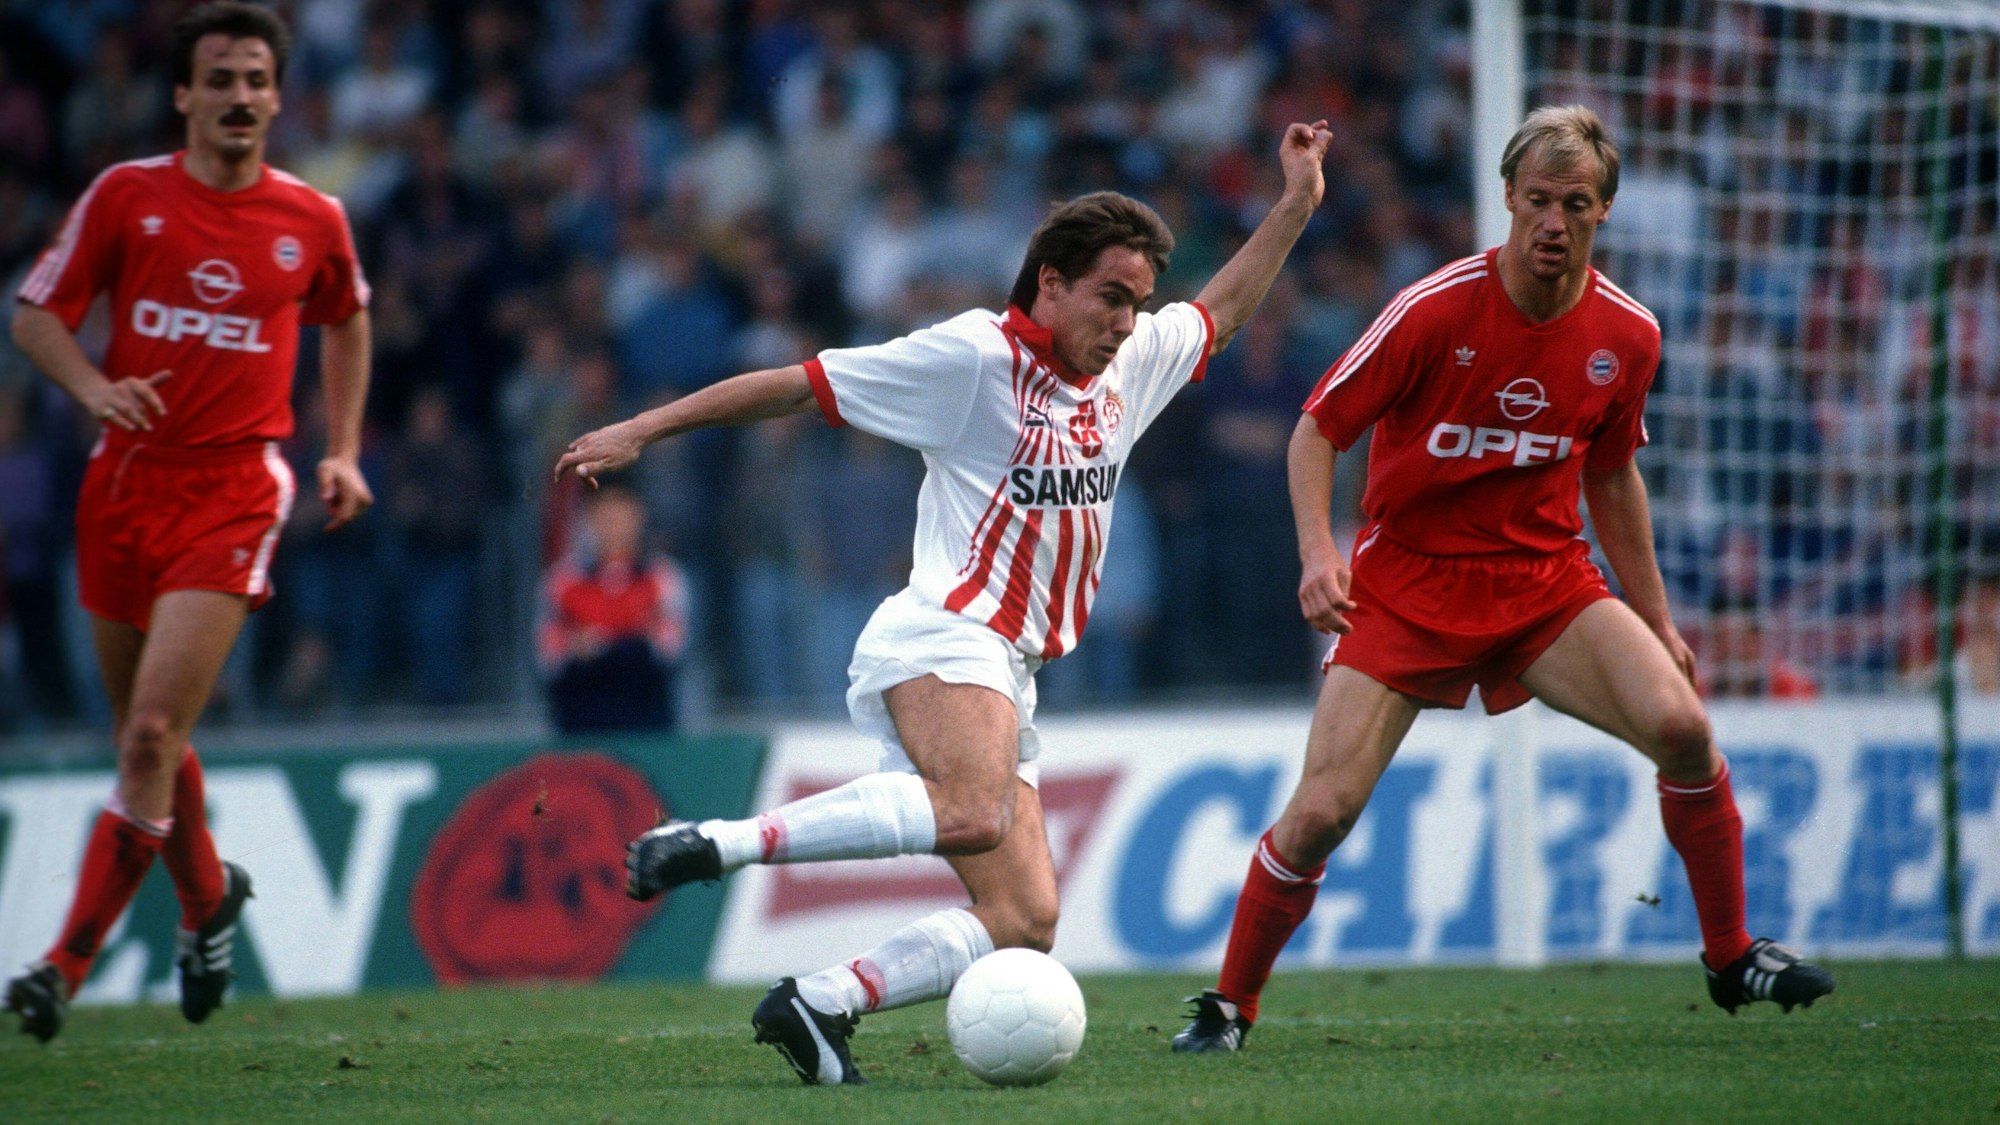 Der Kölner Spieler Olaf Janßen im weißen Trikot im Duell mit einem in rot gekleideten Gegenspieler des FC Bayern München.